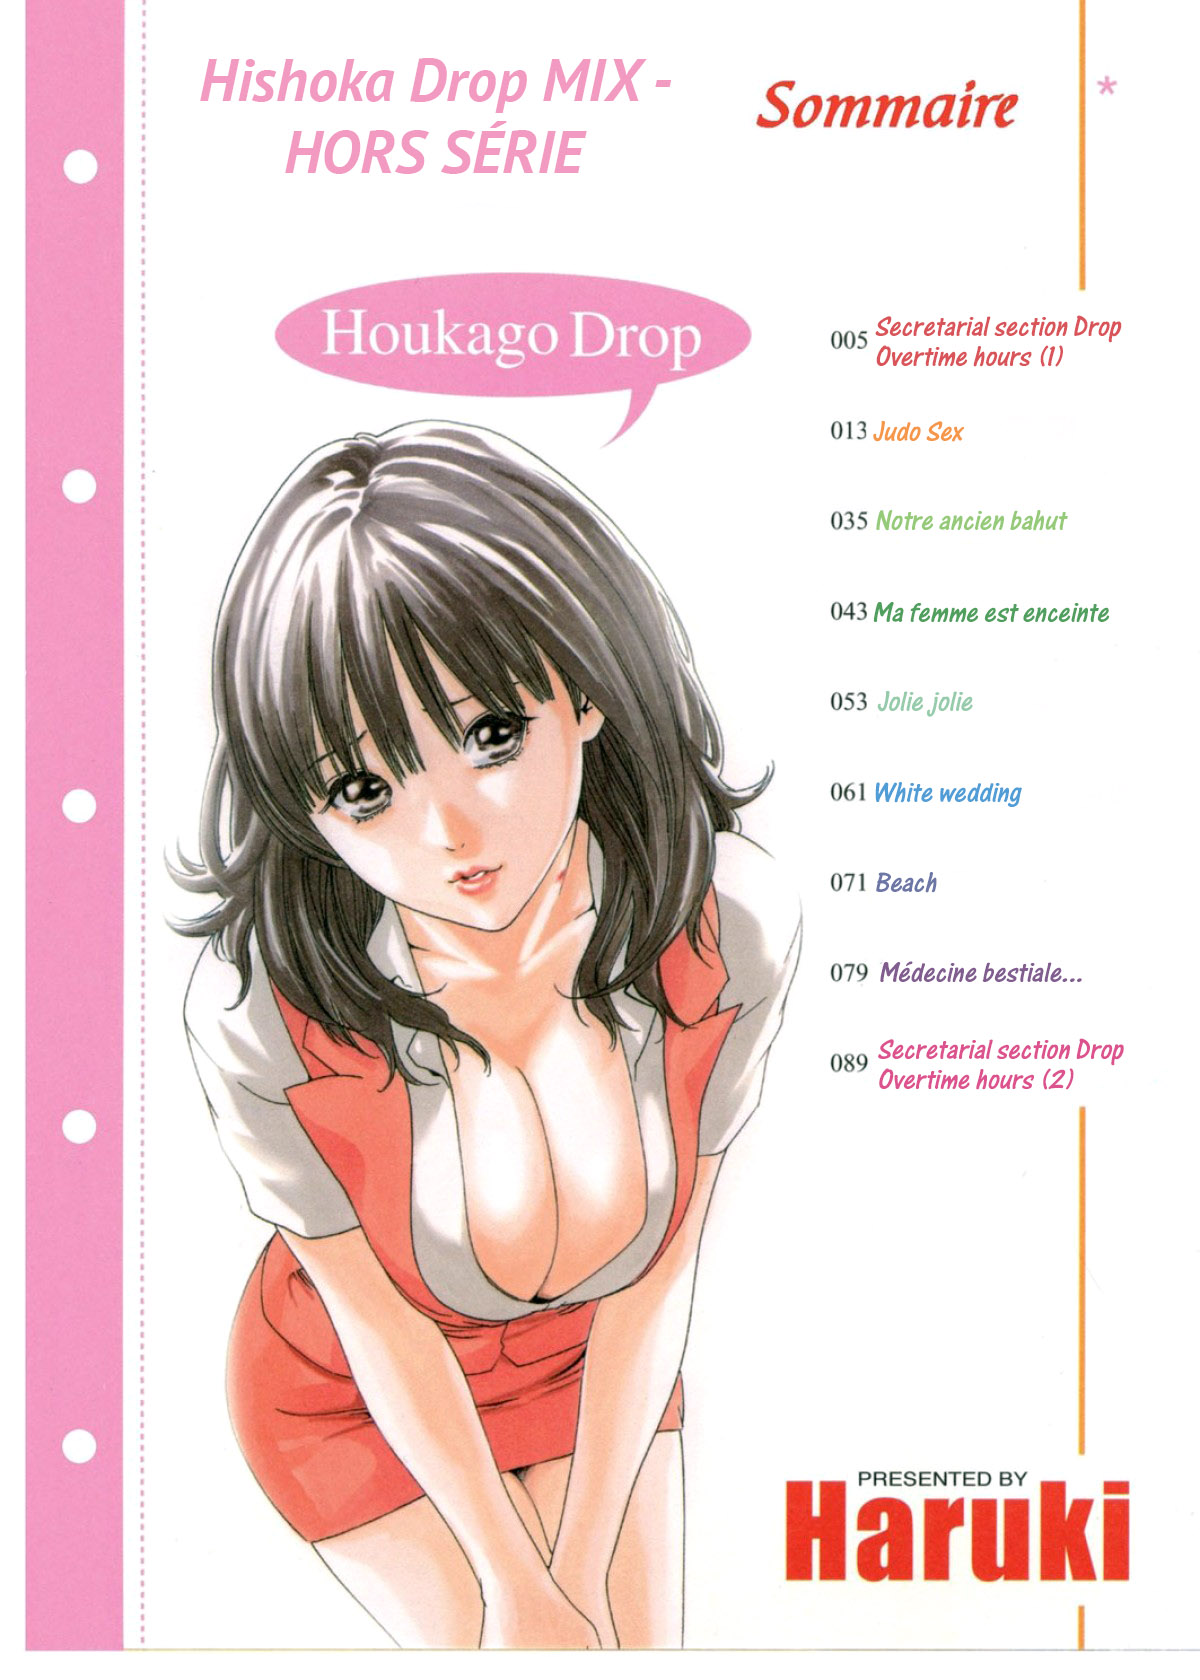 Houkago Drop - Heures supplémentaires numero d'image 6